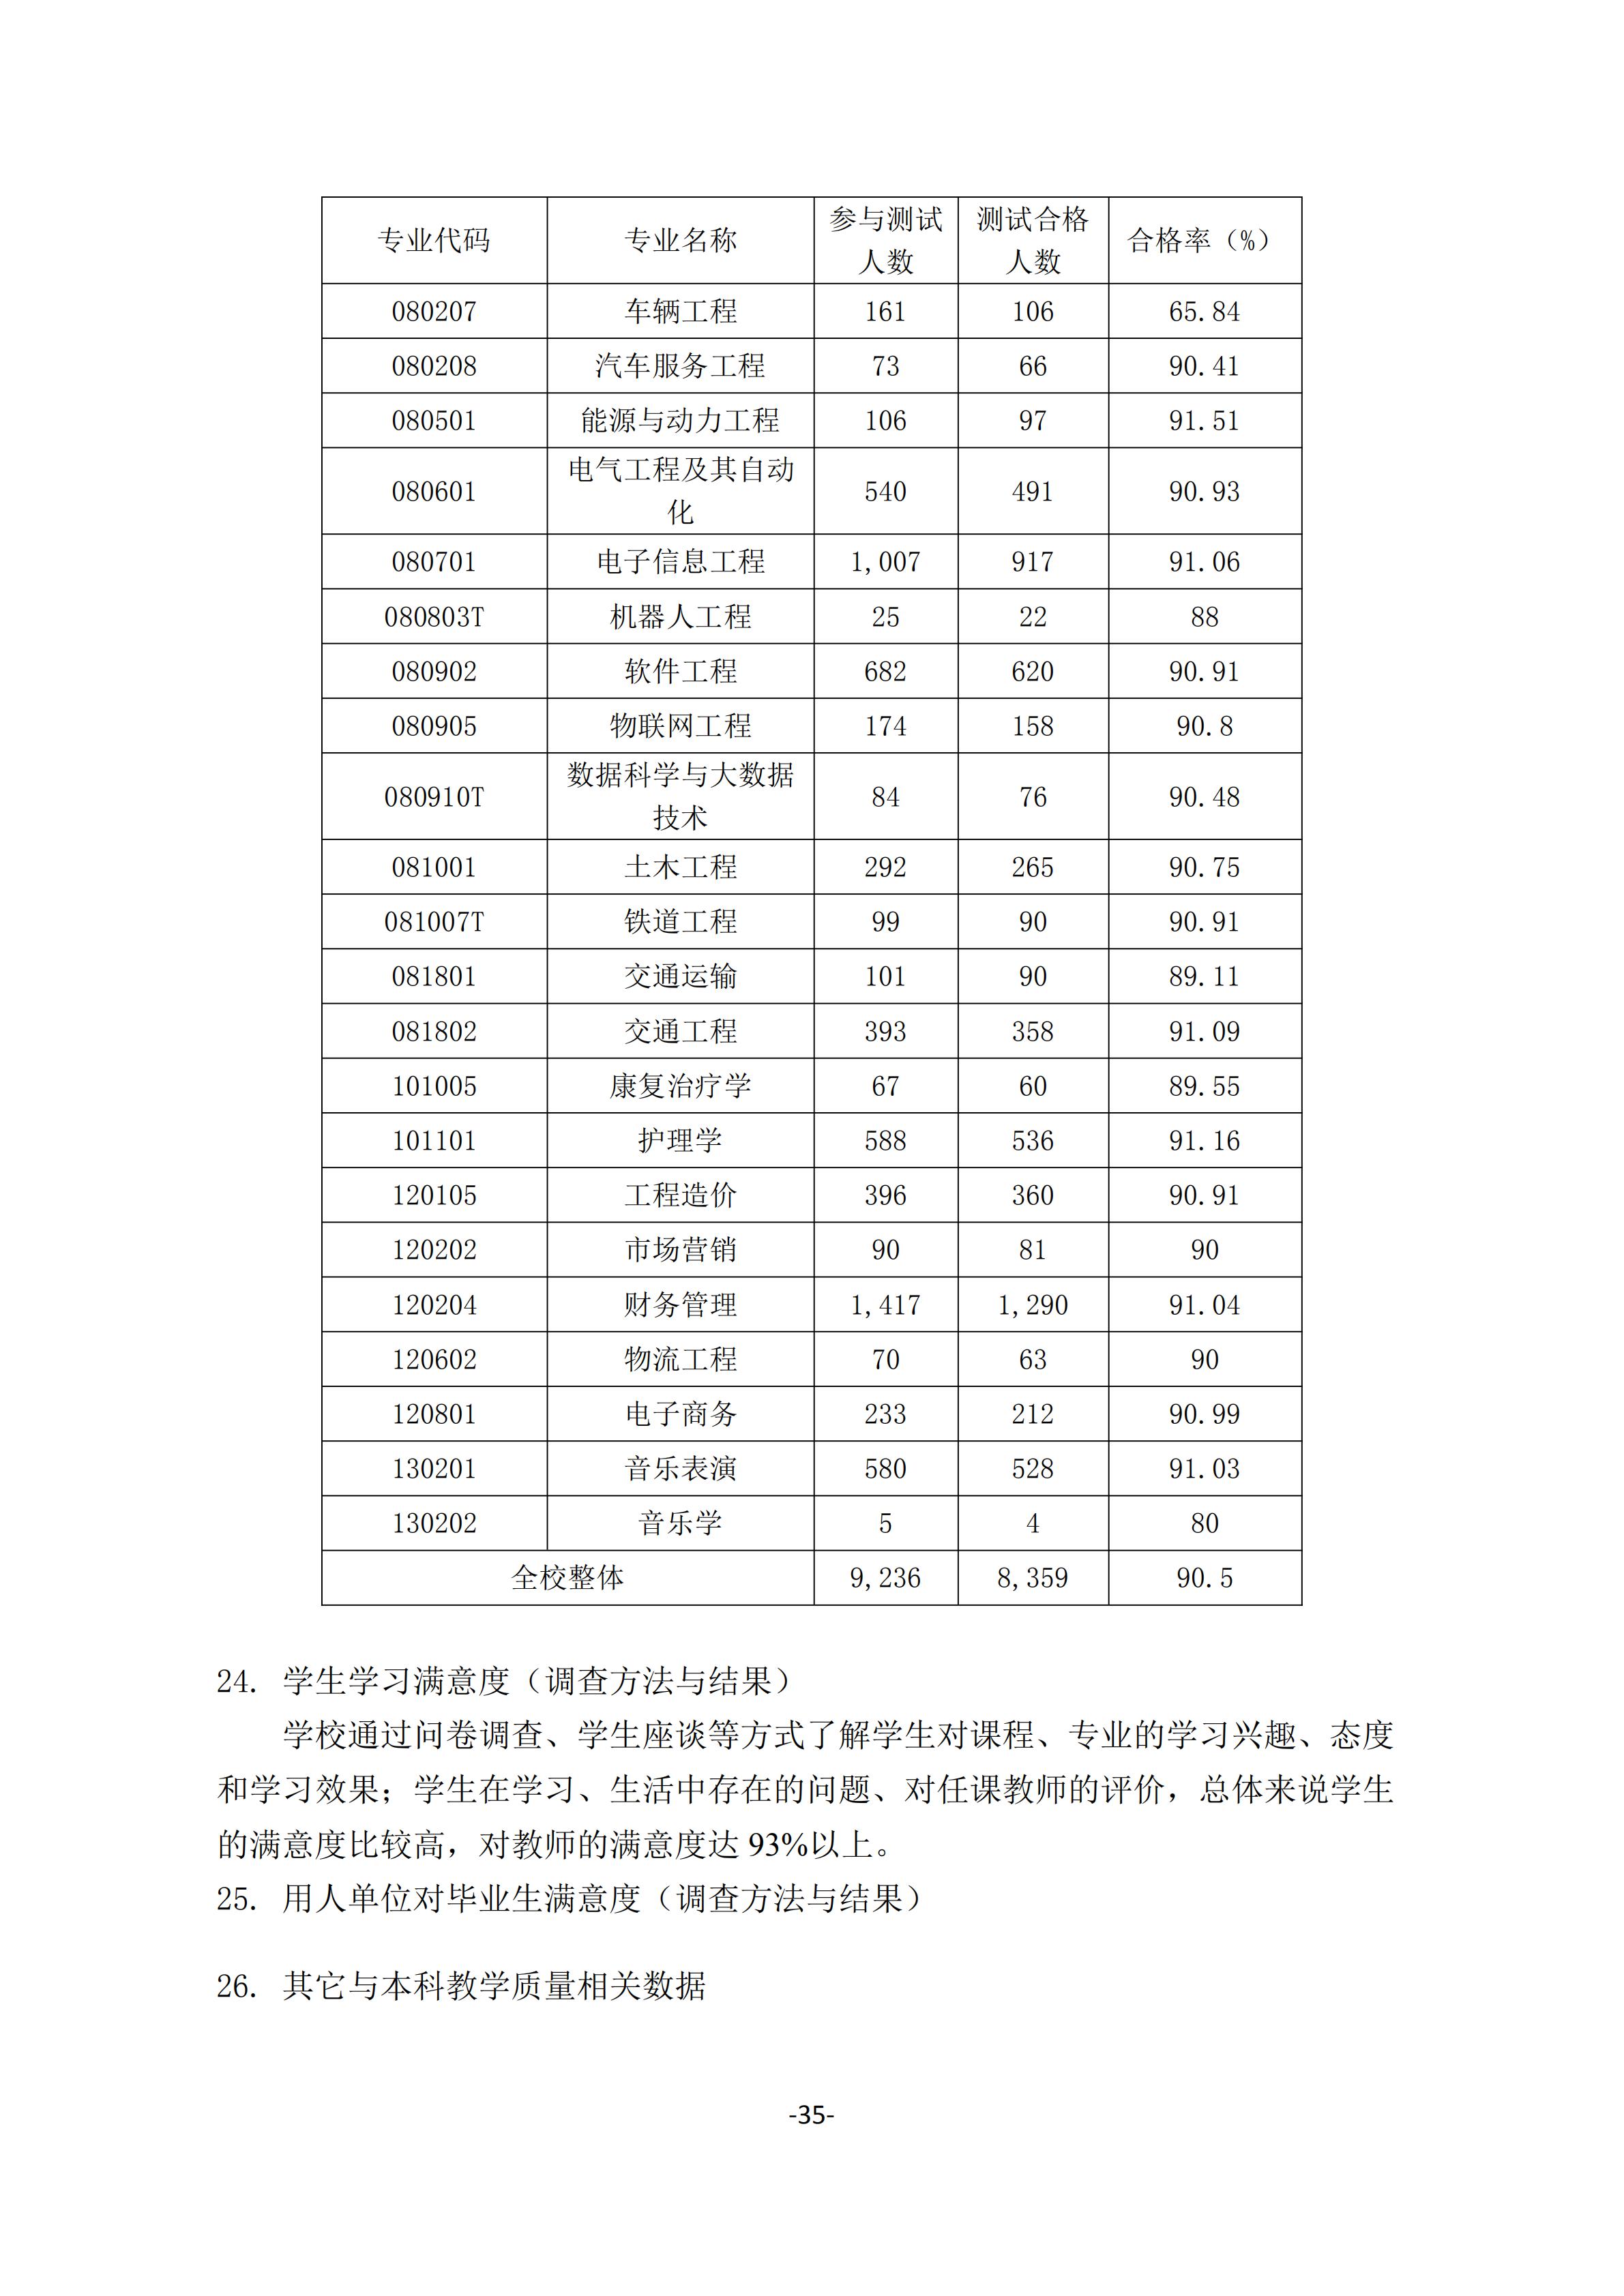 1.湖南交通工程学院2018-2019学年本科教学质量报告_34.jpg